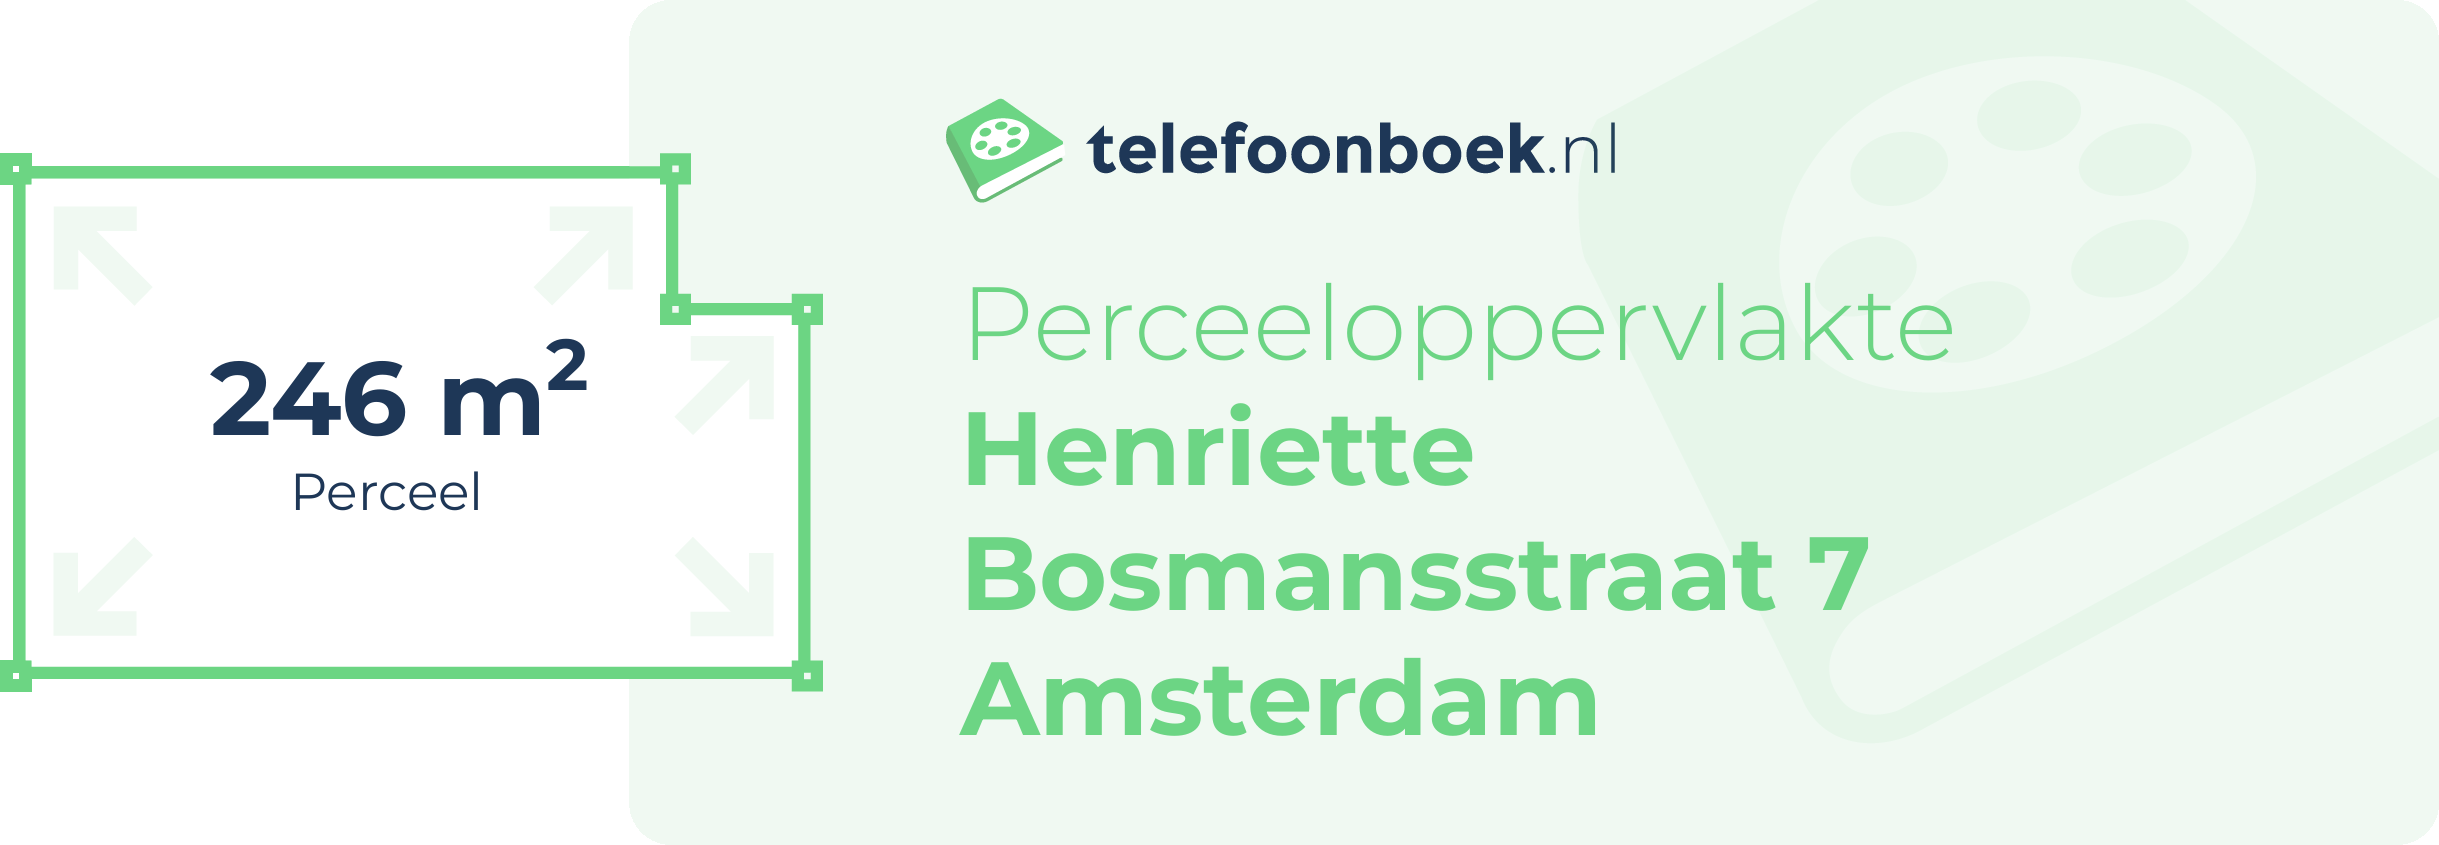 Perceeloppervlakte Henriette Bosmansstraat 7 Amsterdam